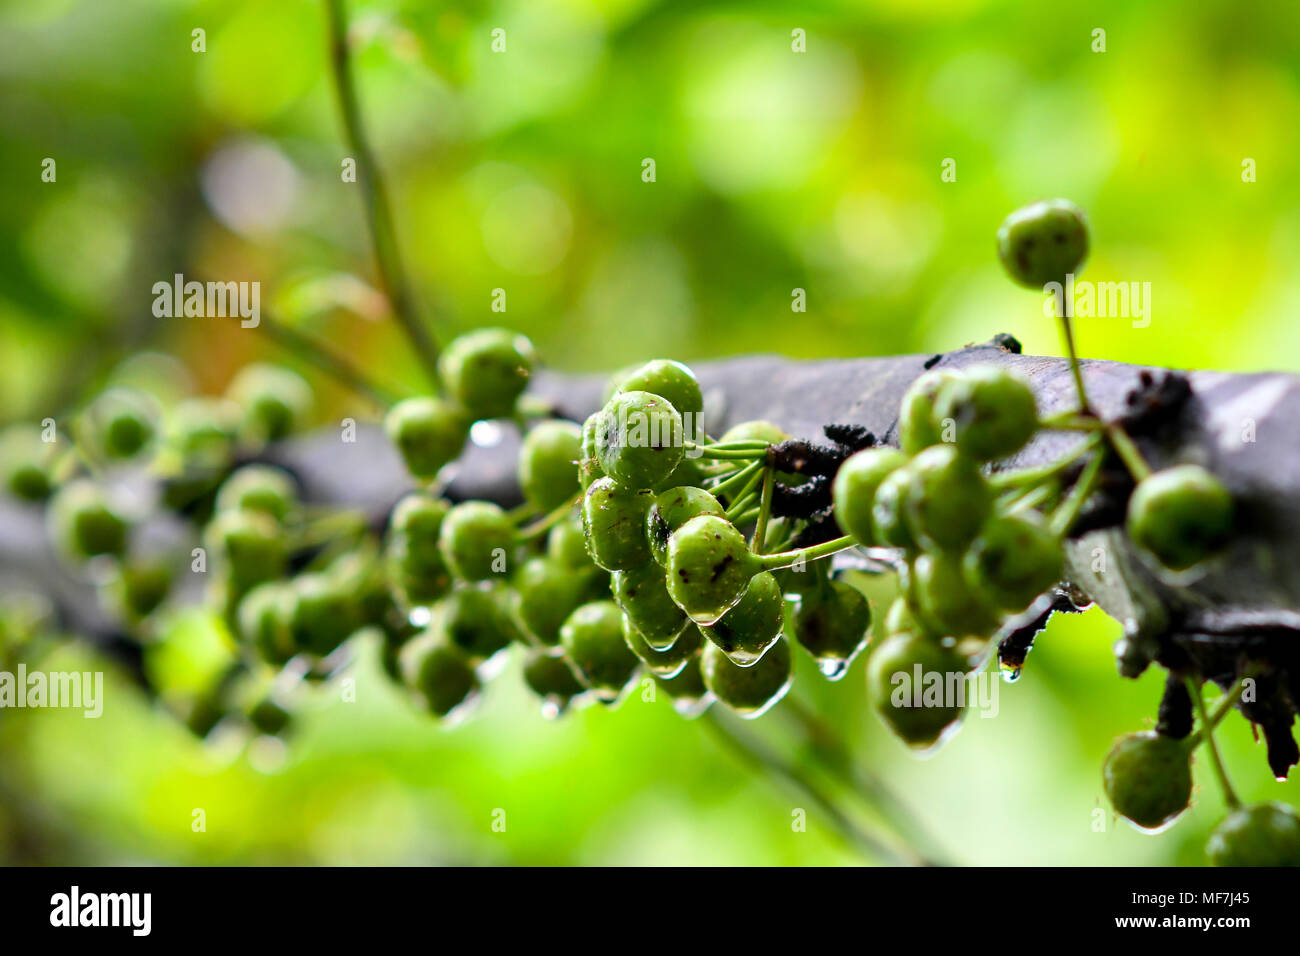 tiny green fruits grow on tree Stock Photo